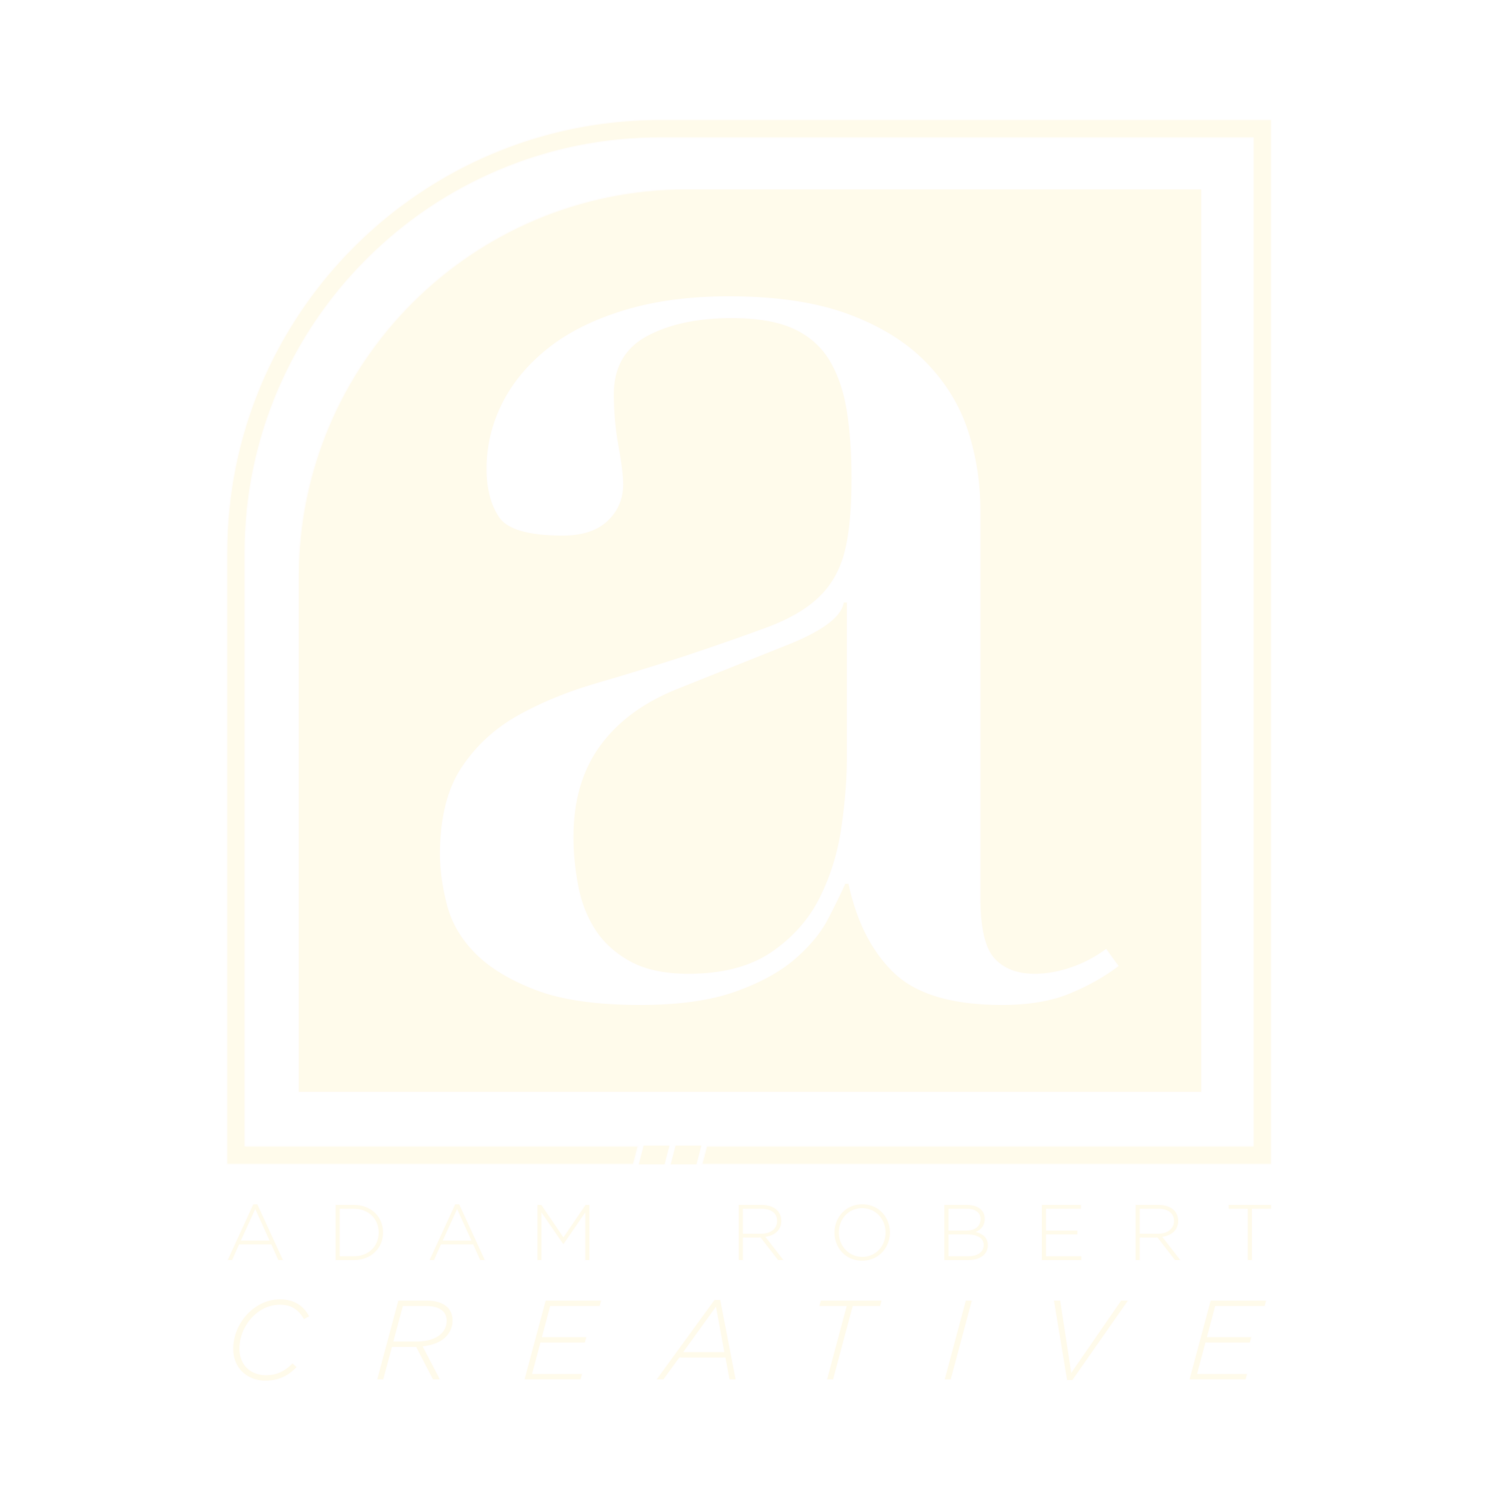 Adam Robert